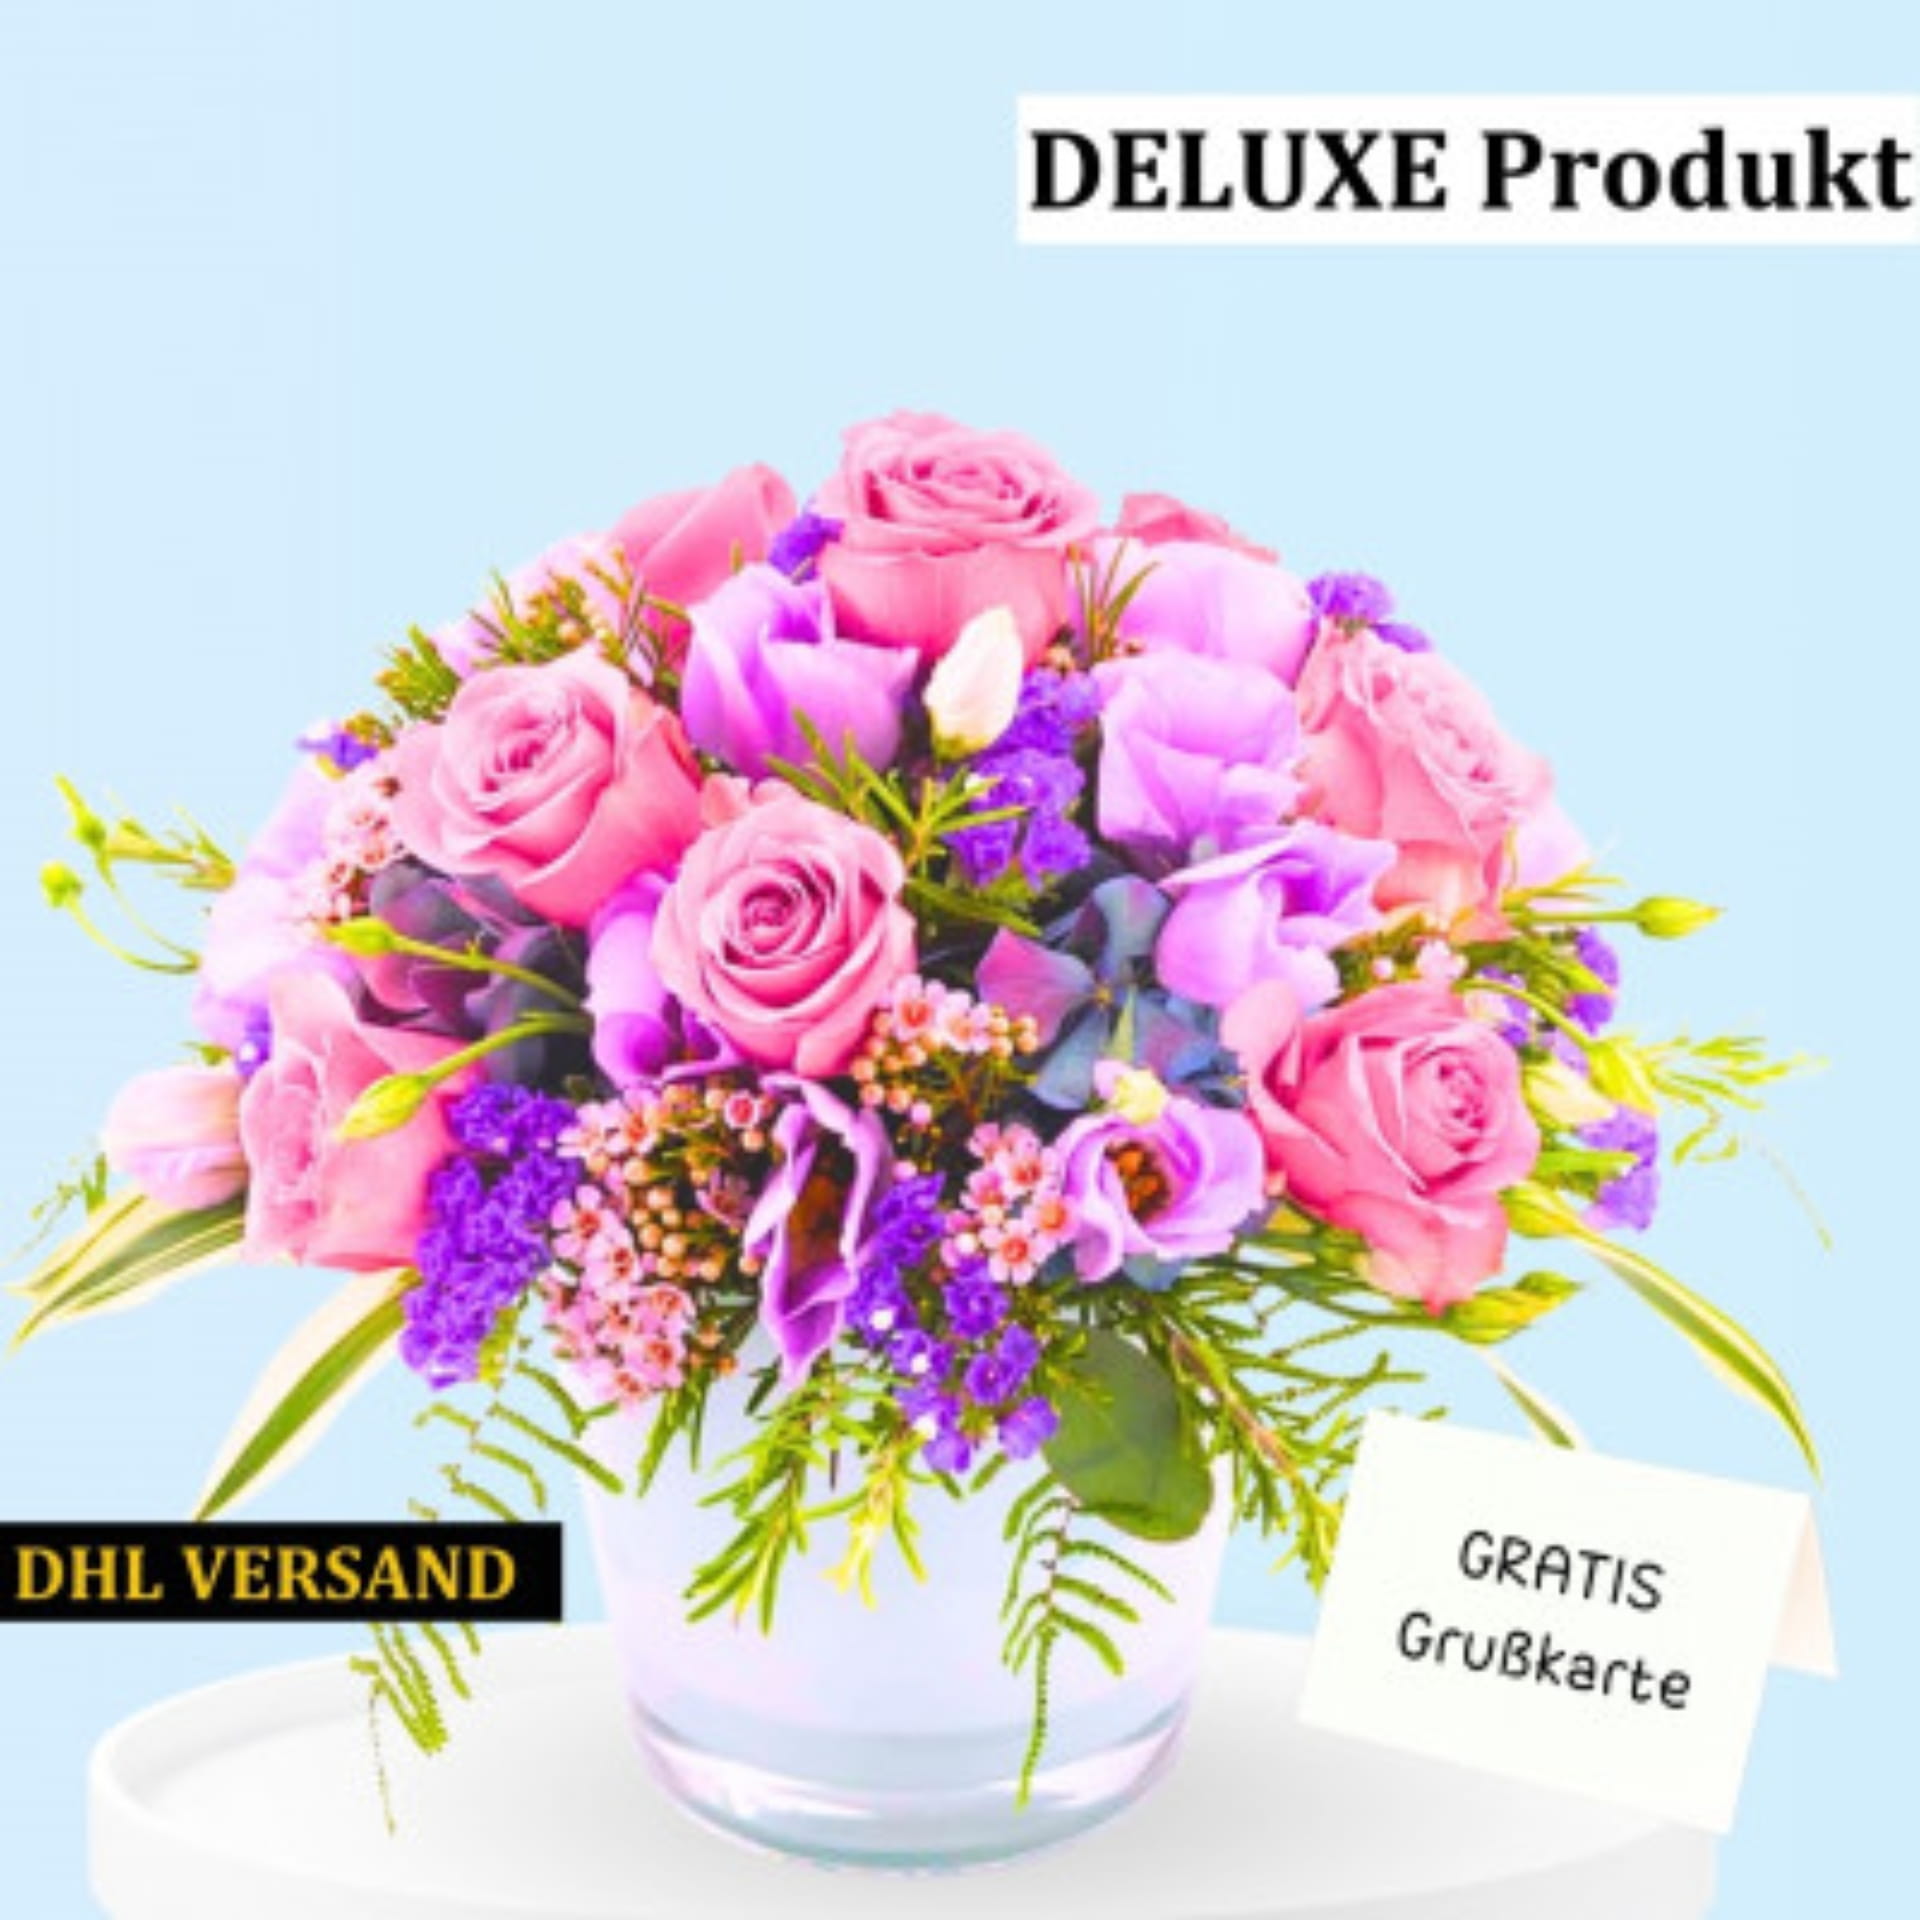 Deluxe Blumengesteck mit rosa Rosen und lila Blumen, DHL Versand. Gratis Grußkarte.